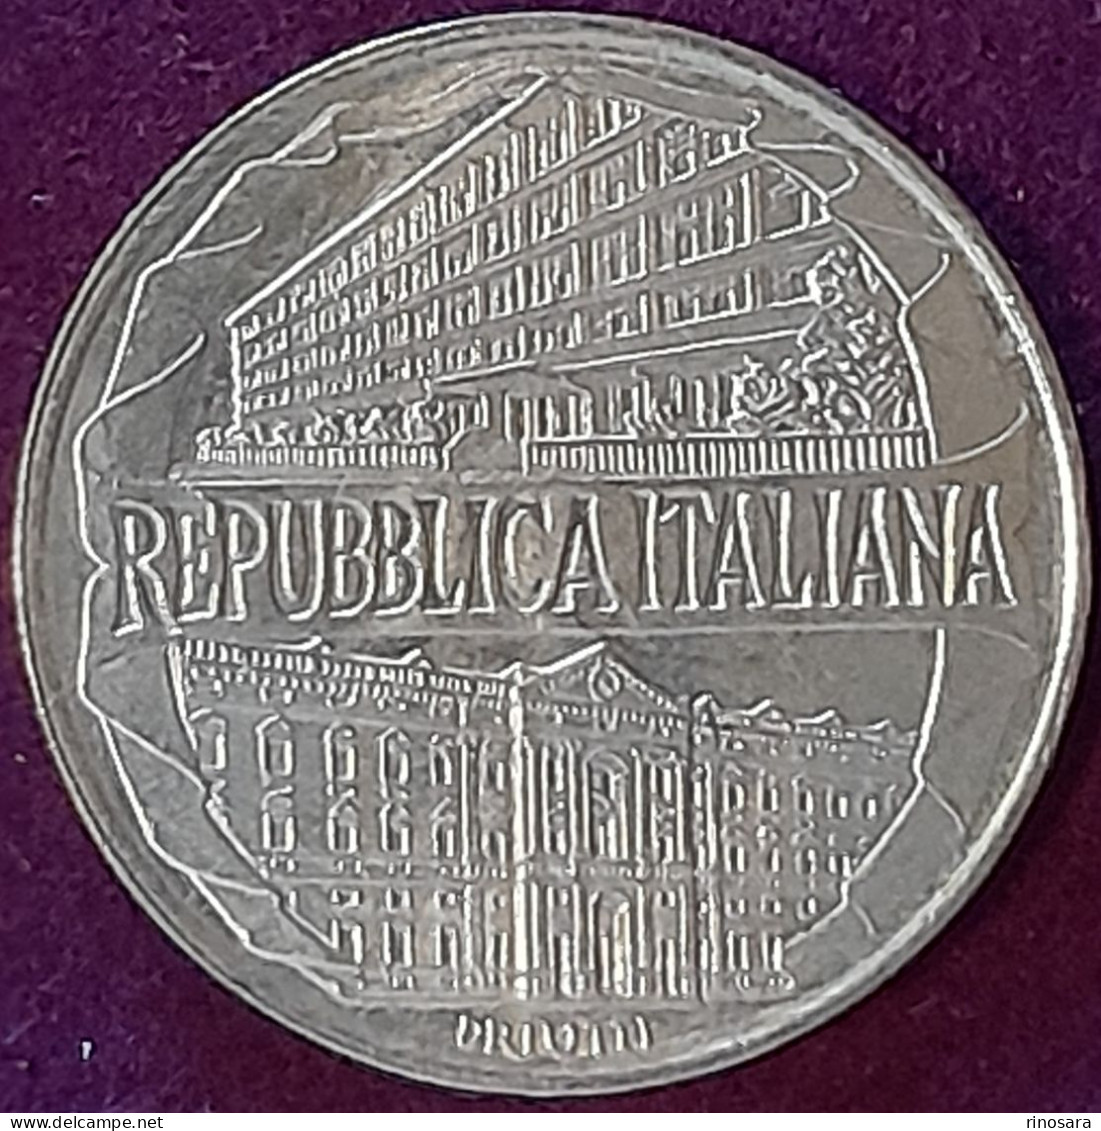 Errore Di Conio 200 Lire Repubblica Italiana Commemorativa Aacademia Navale - 200 Liras